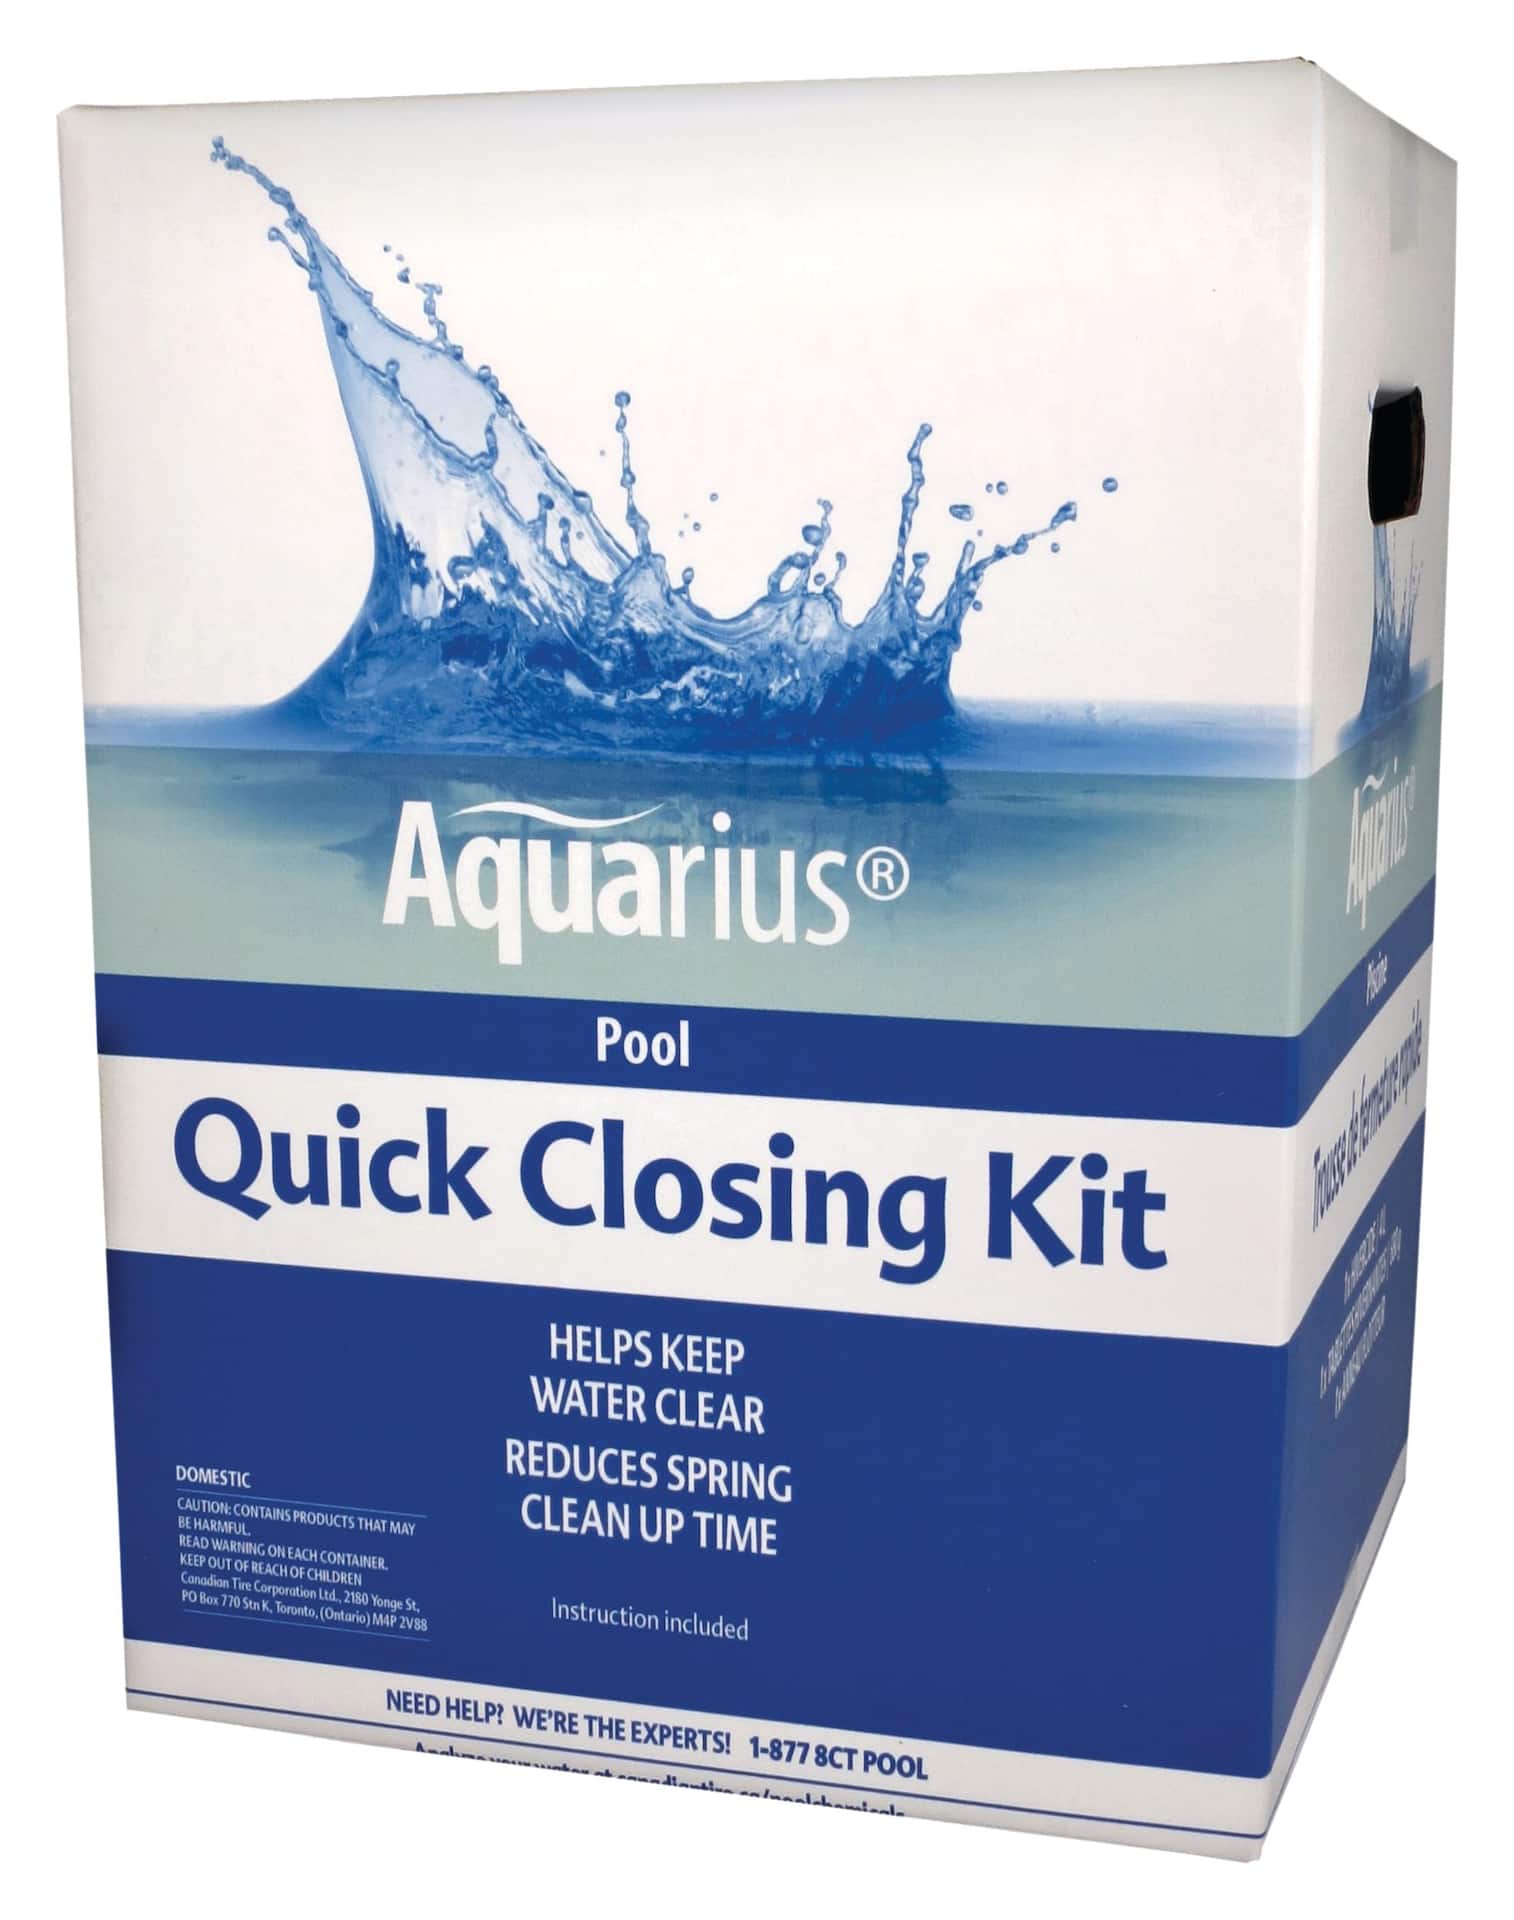 Aquarius Pool Quick Closing Kit